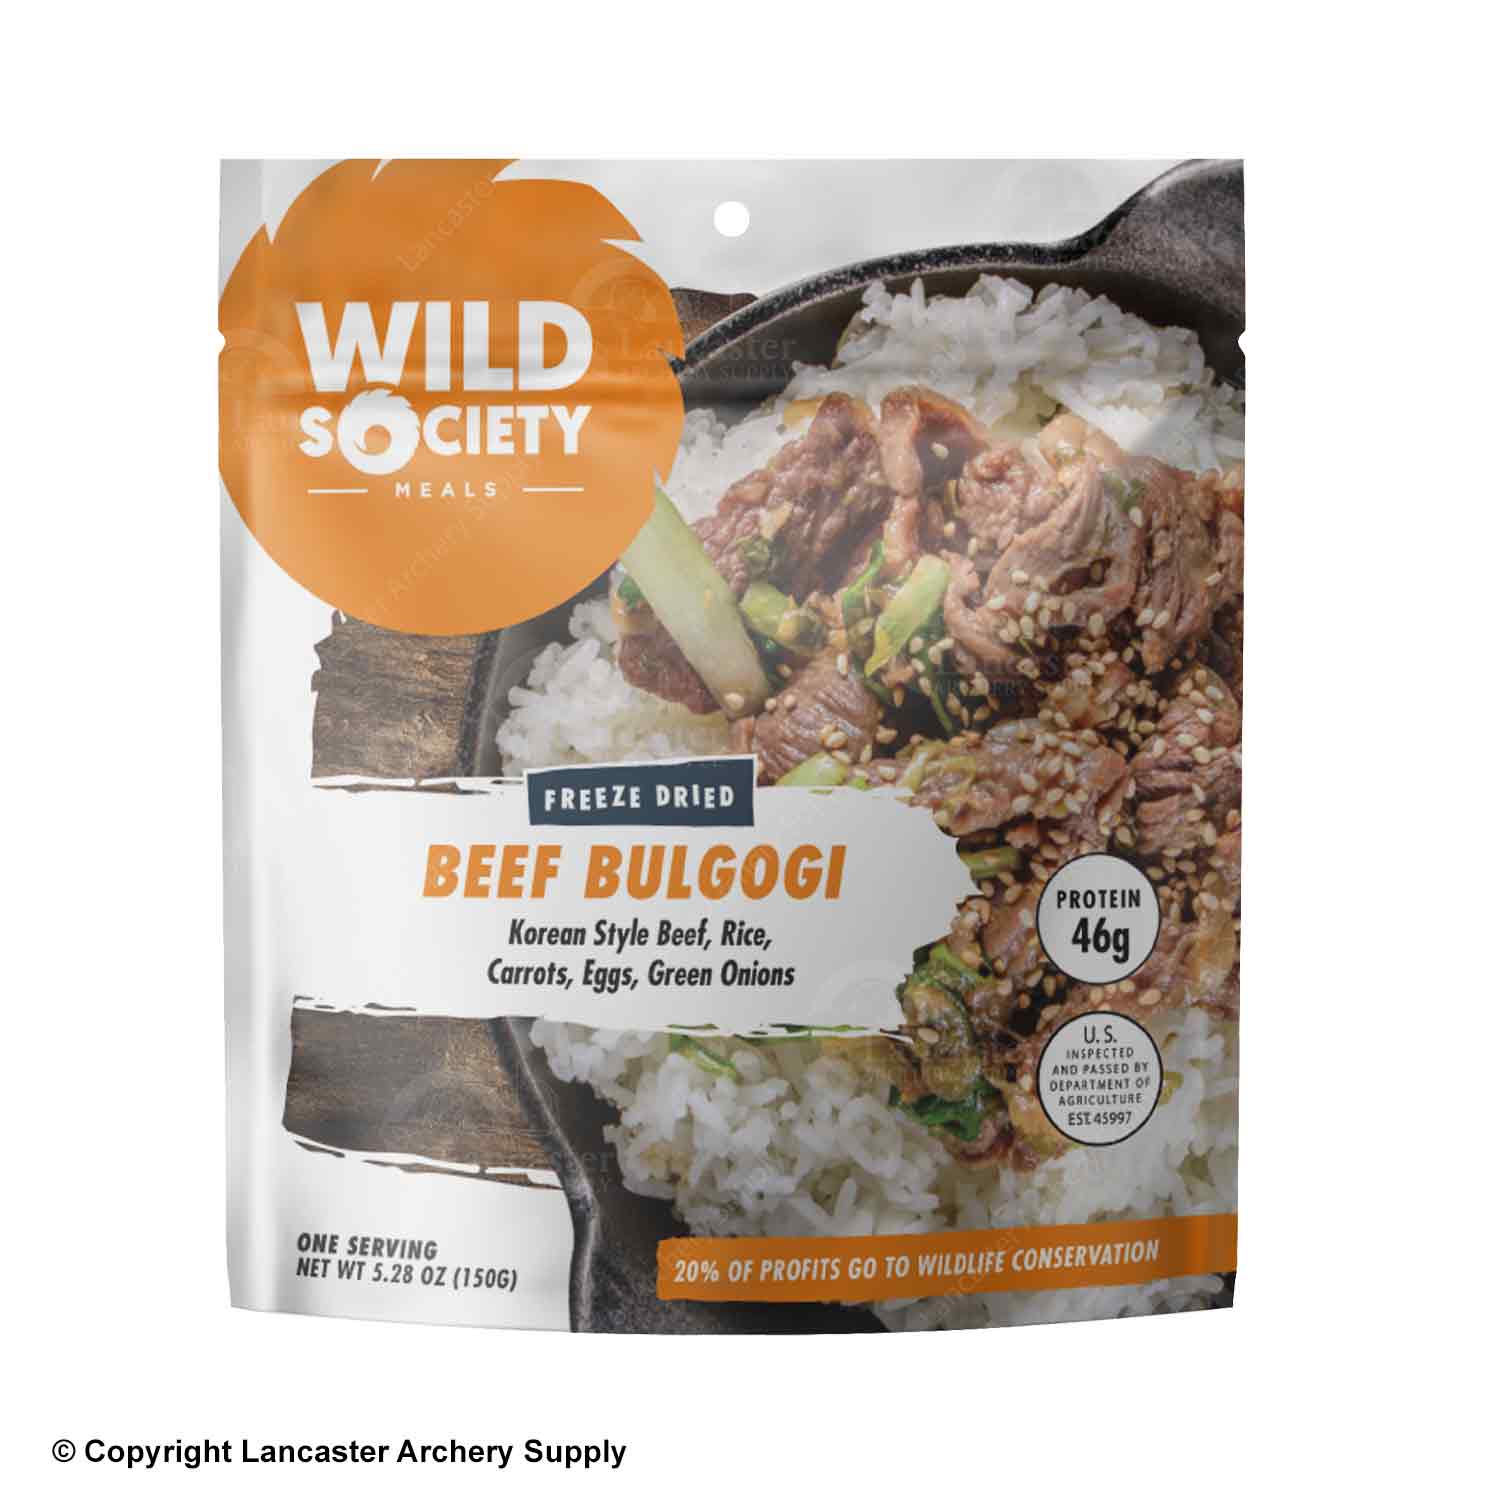 Wild Society Beef Bulgogi Freeze Dried Meal